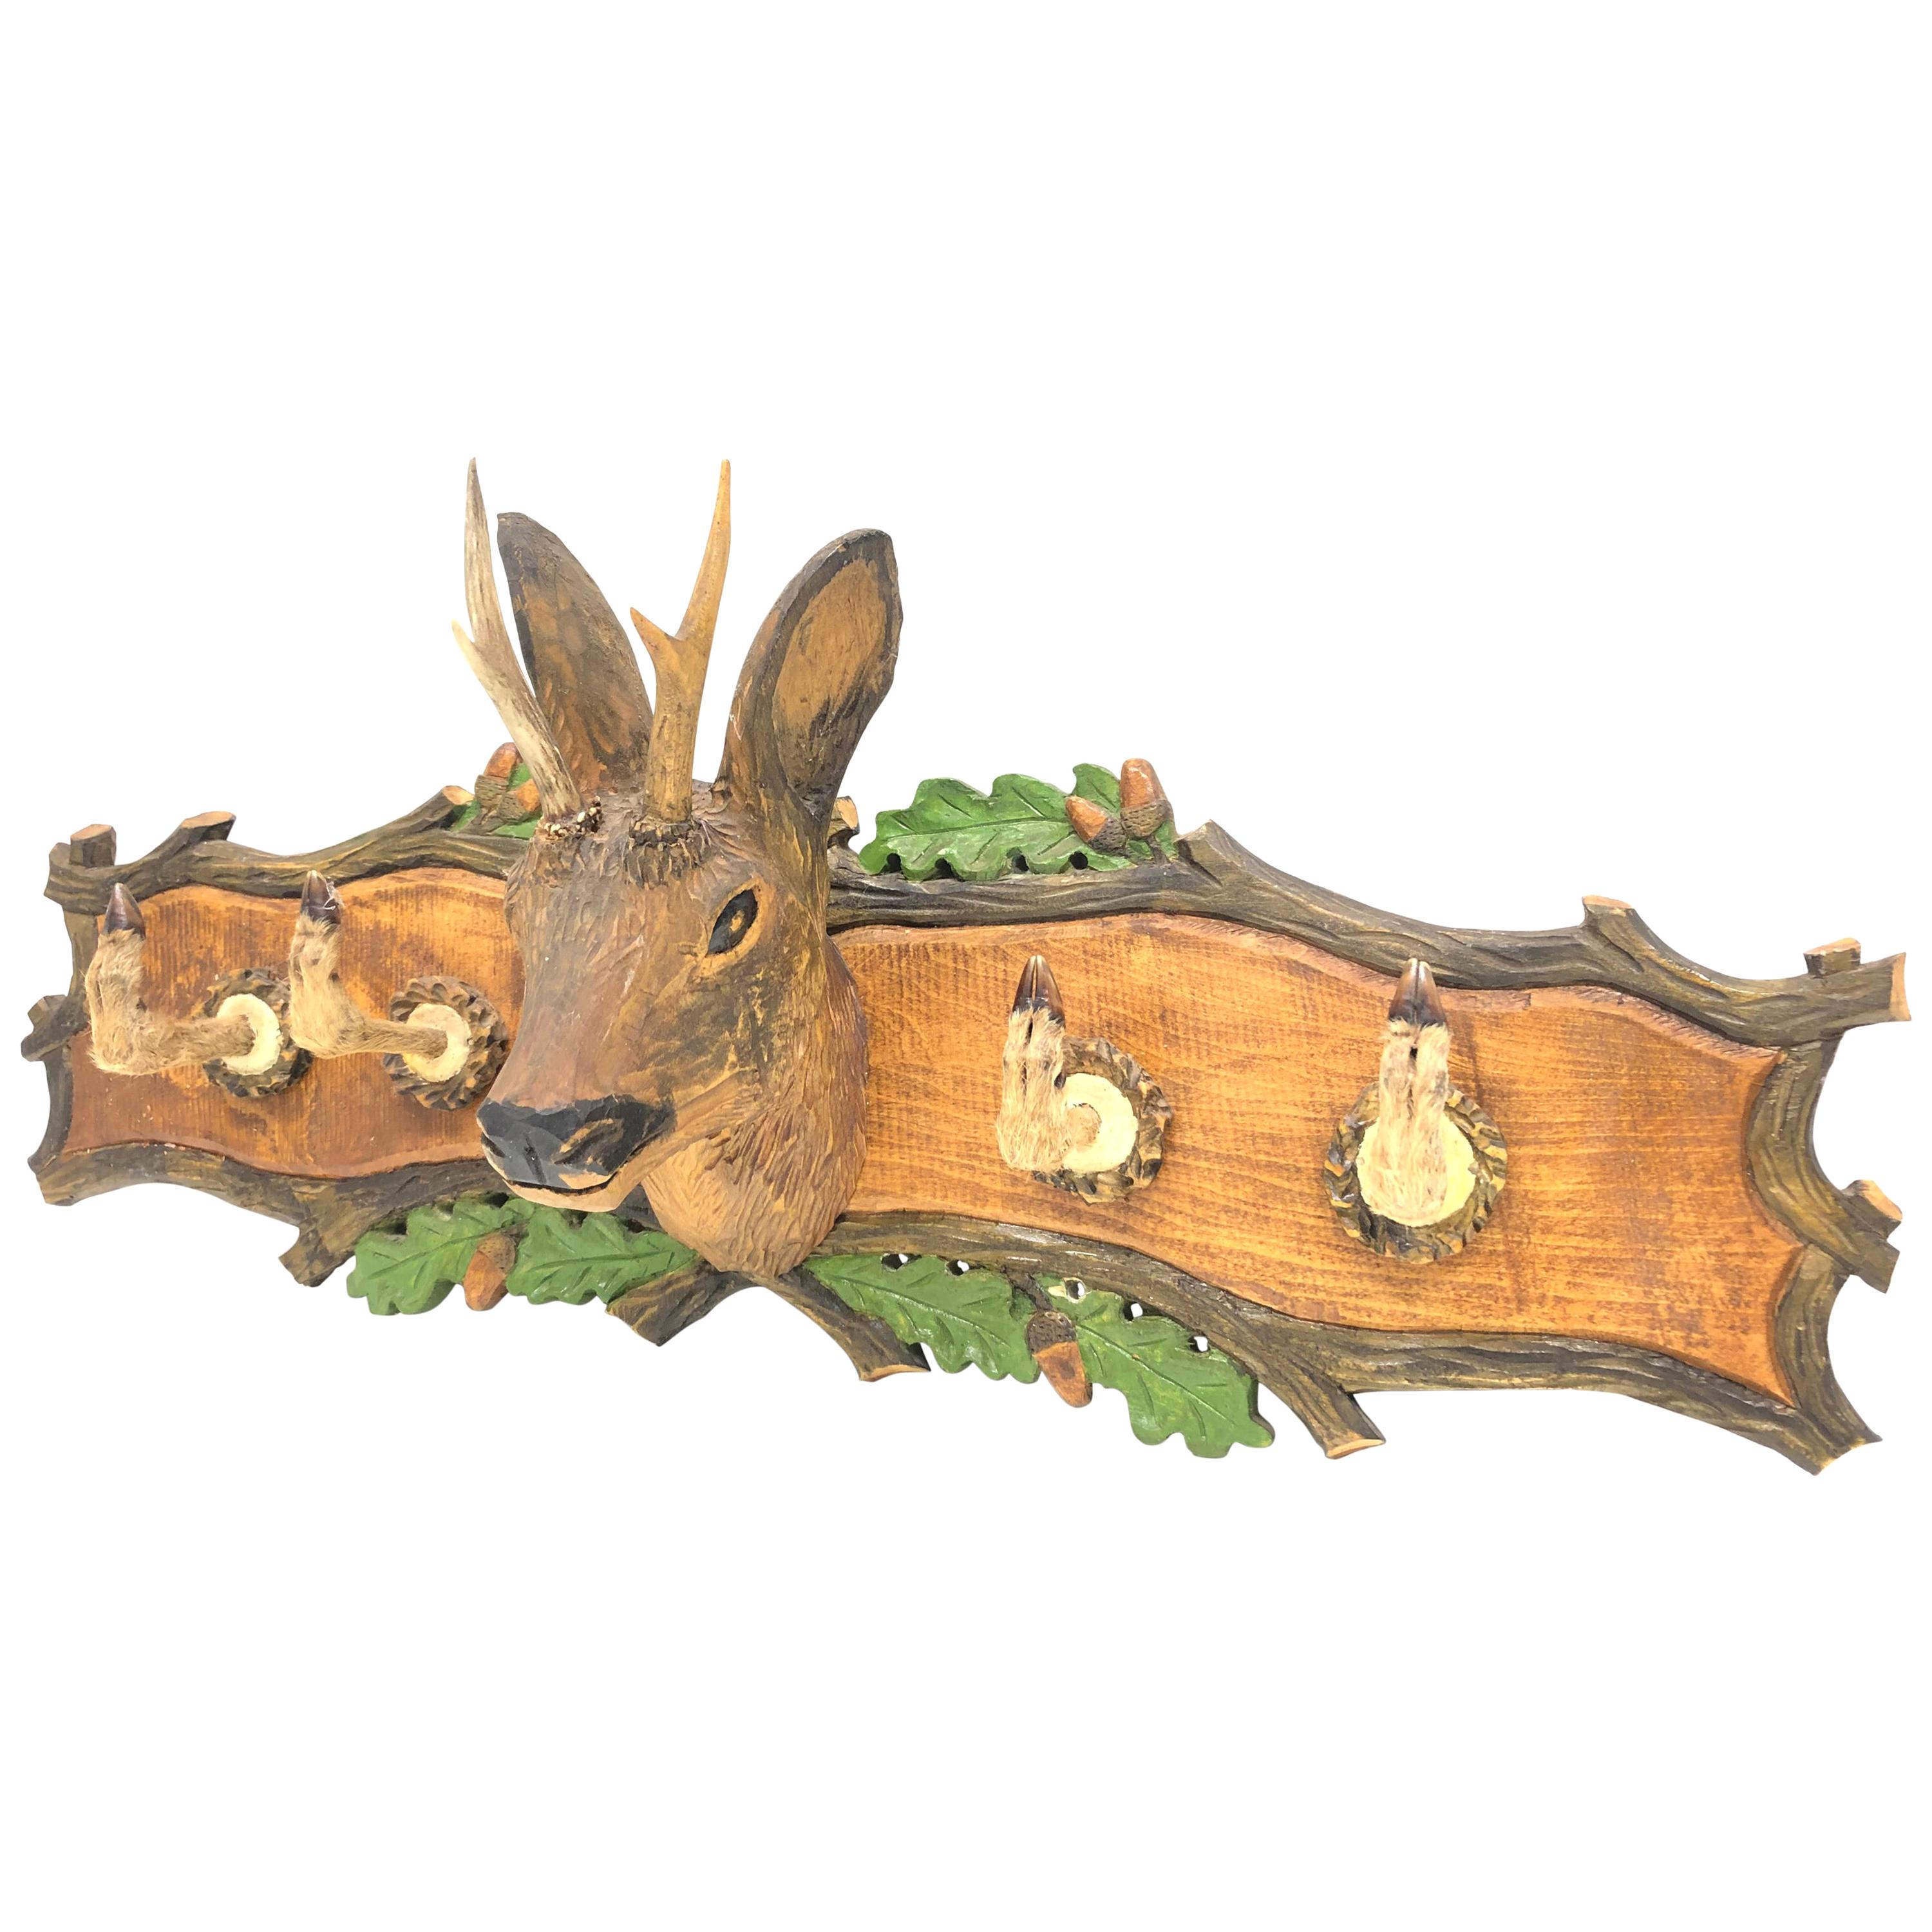 Wood Carved Folk Art Deer 20th Century German Black Forest Hat Coat Rack, 1930s For Sale